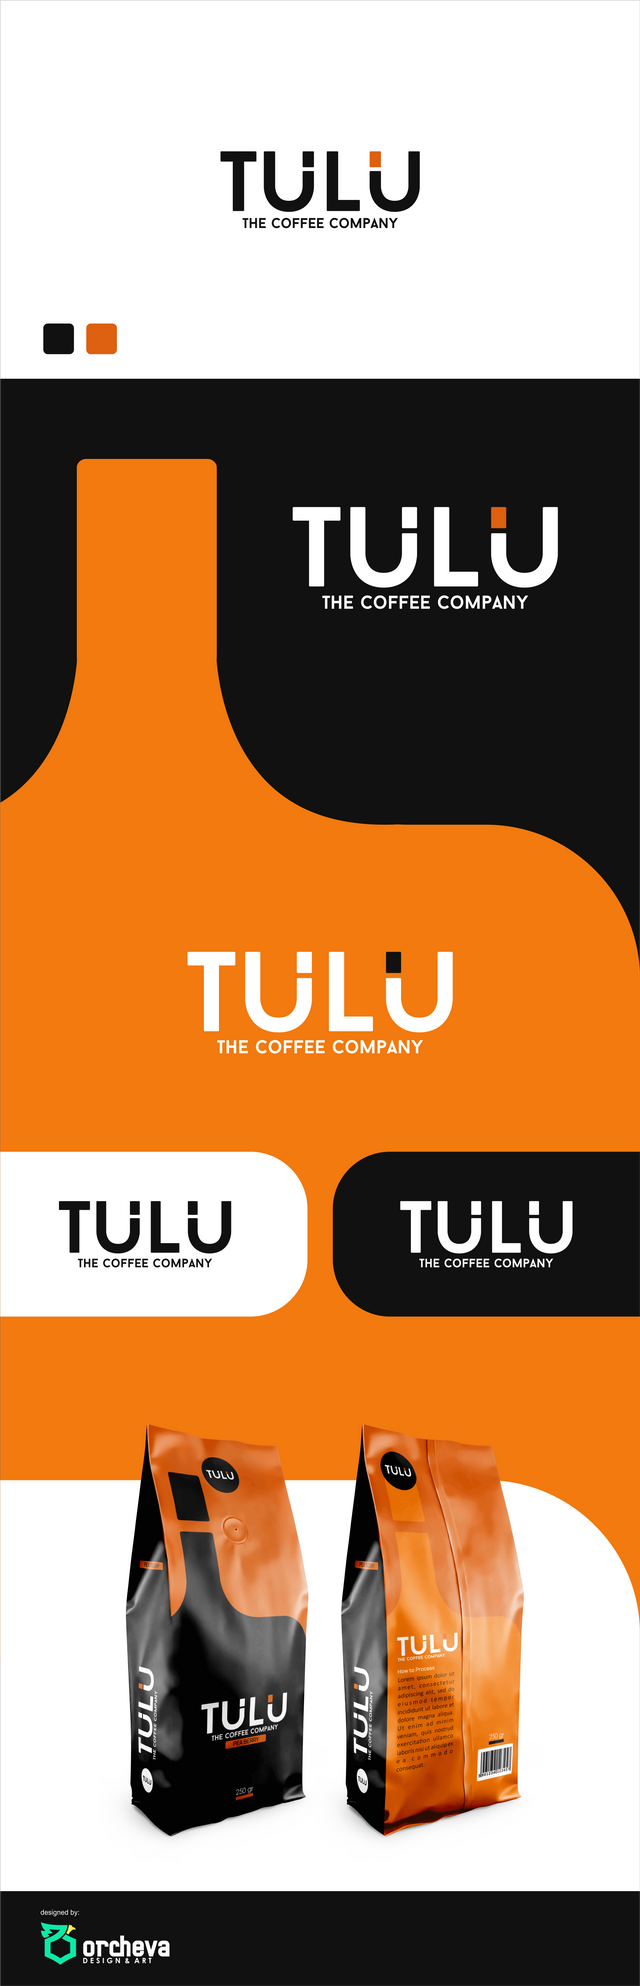 TULU COFFEE LOGO 1.png